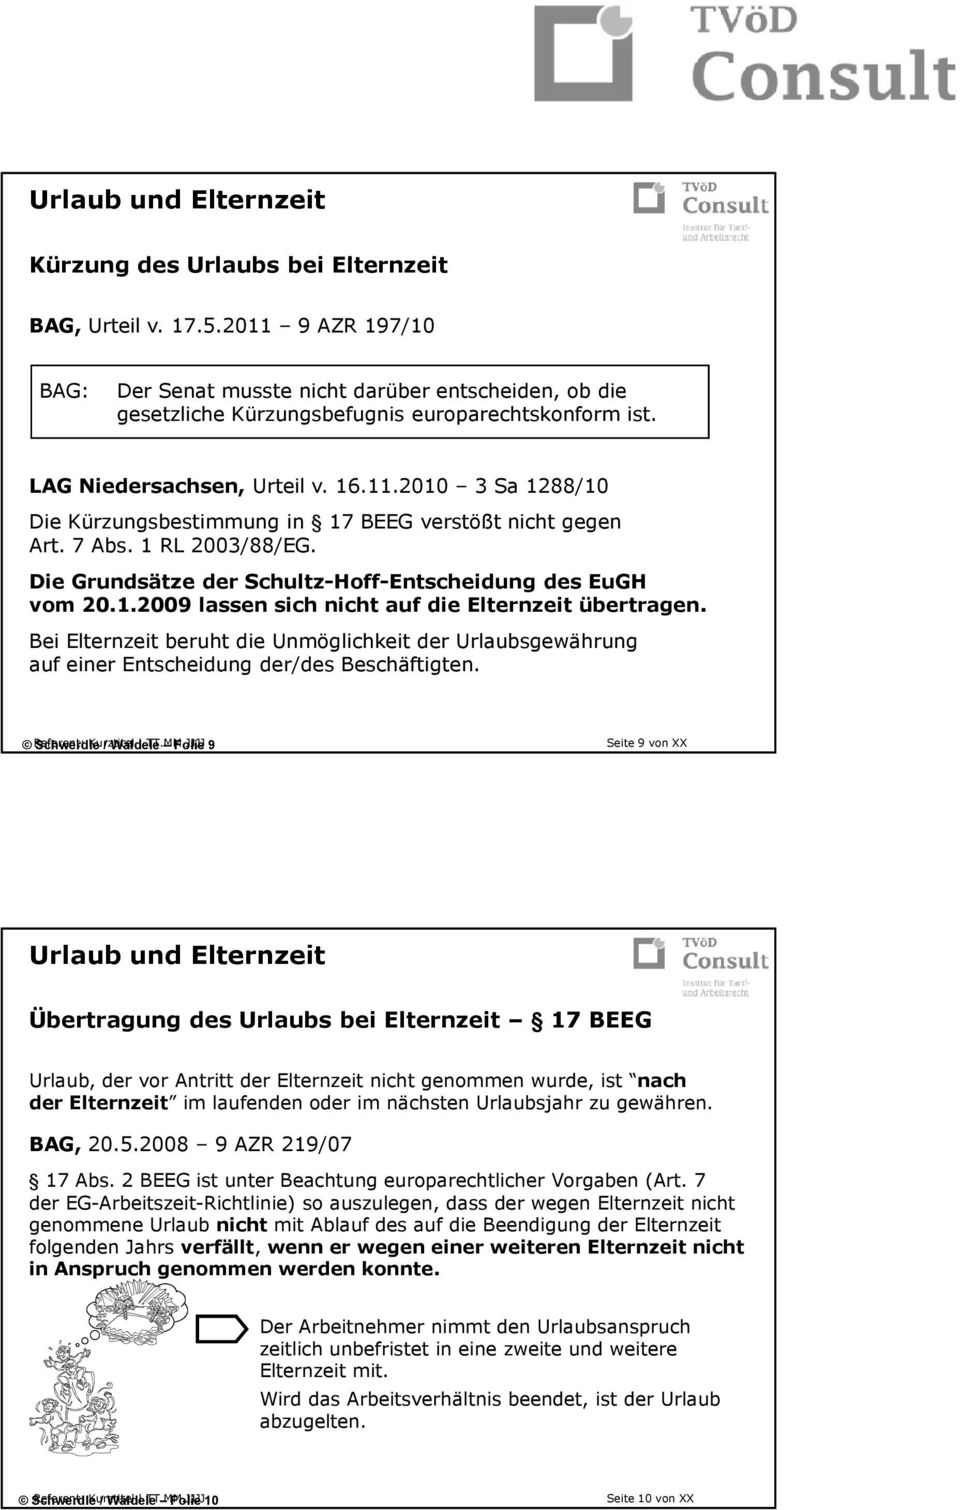 7 Abs. 1 RL 2003/88/EG. Die Grundsätze der Schultz-Hoff-Entscheidung des EuGH vom 20.1.2009 lassen sich nicht auf die Elternzeit übertragen.